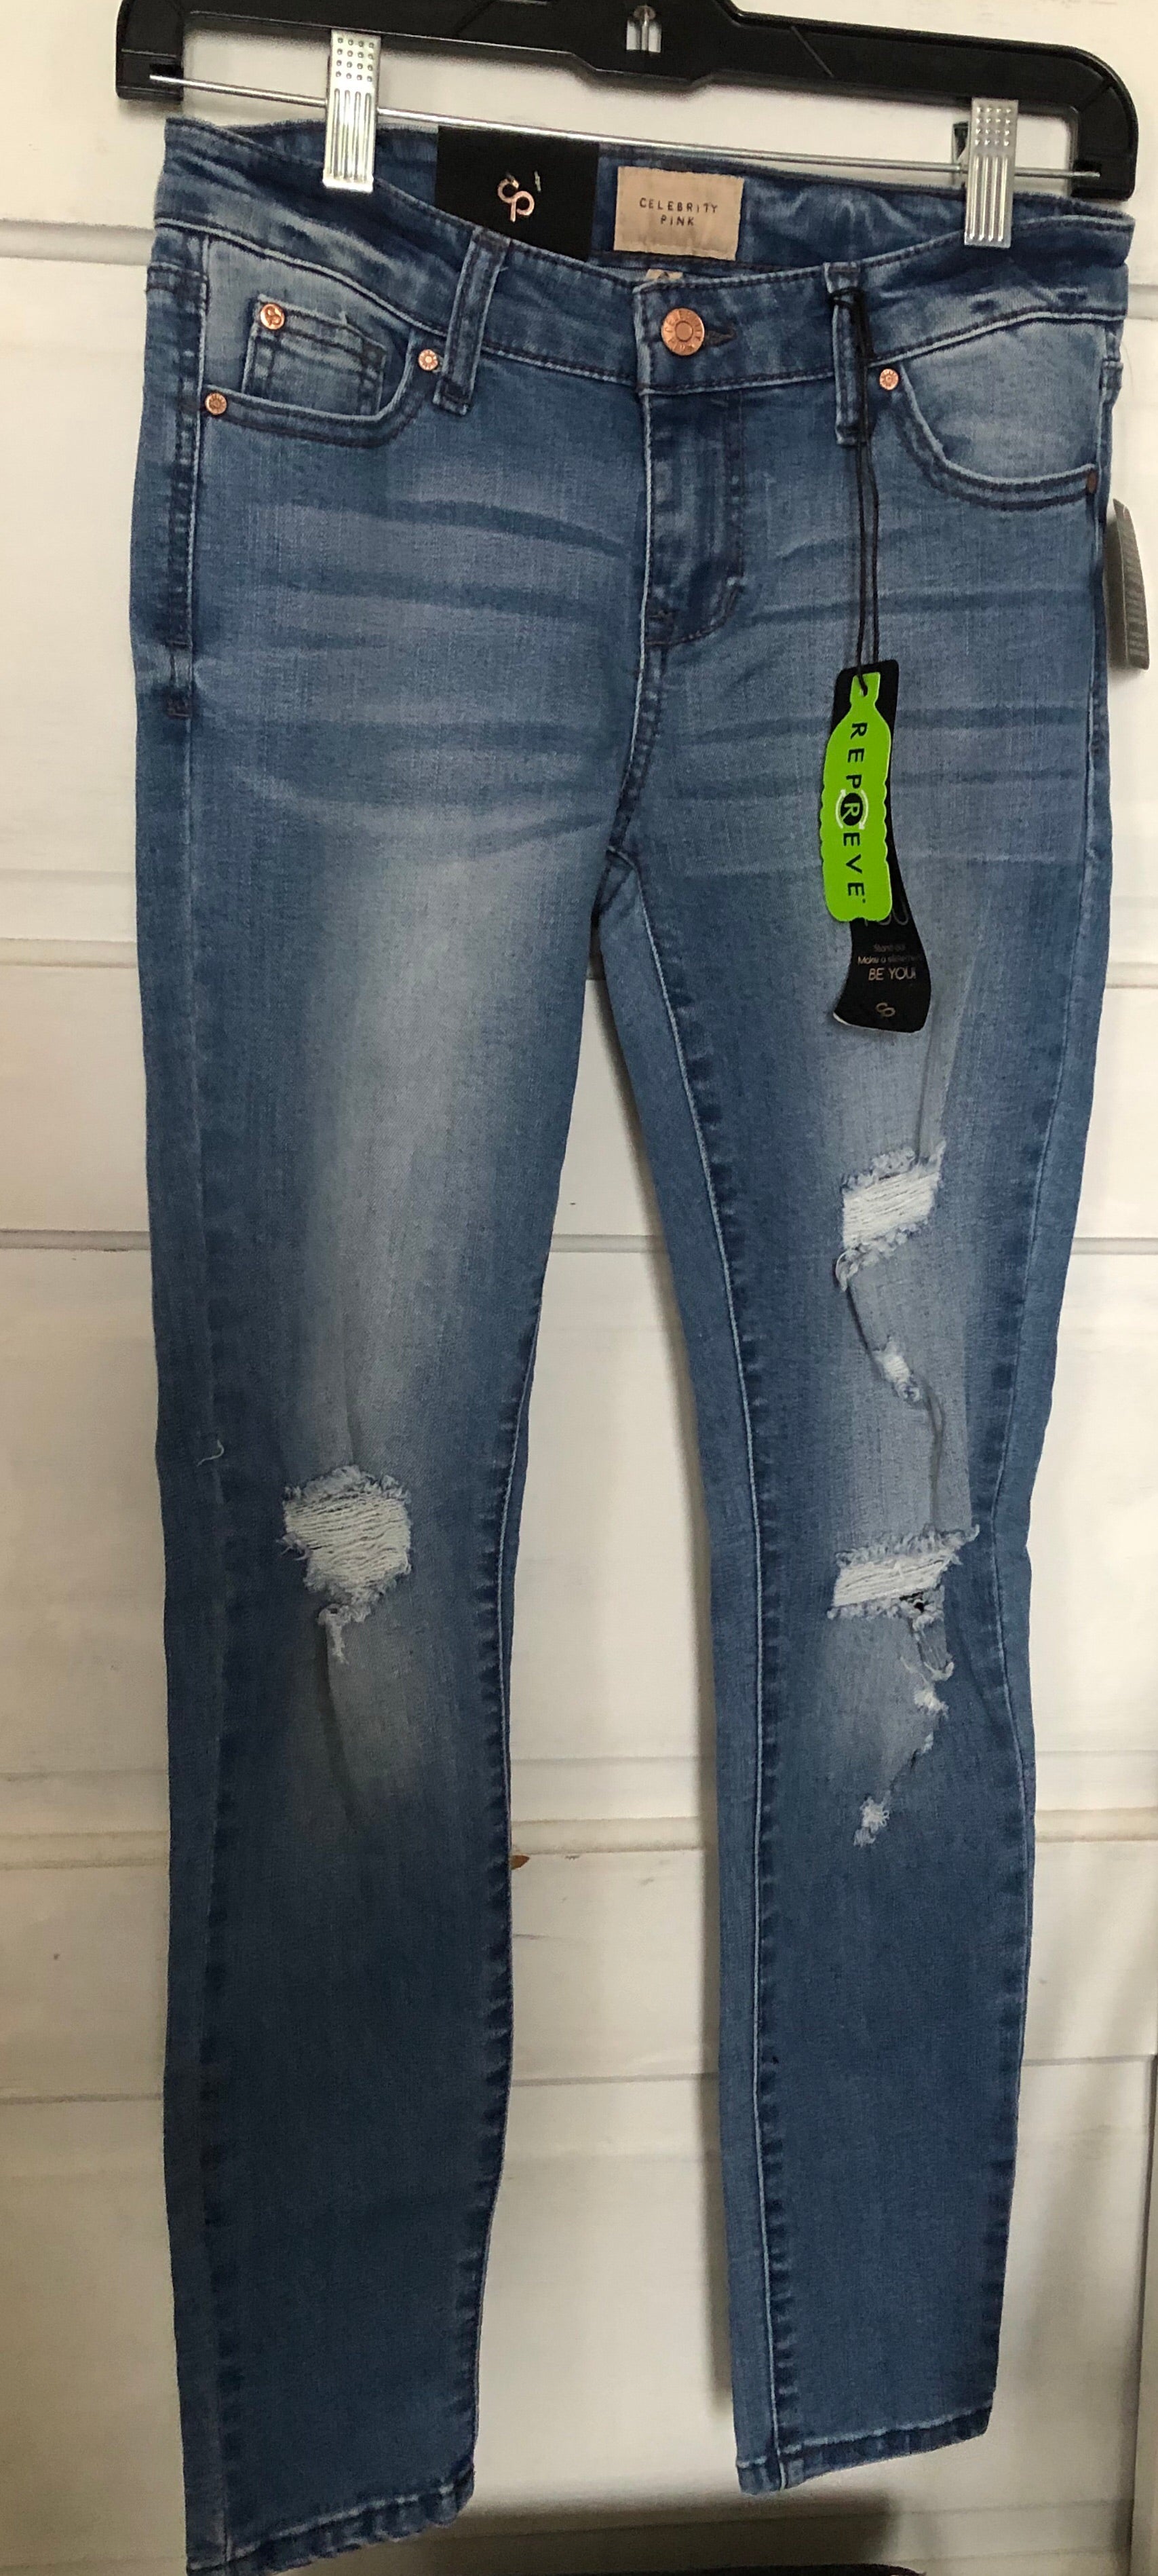 Jeans ajustados: tobillo de tiro medio